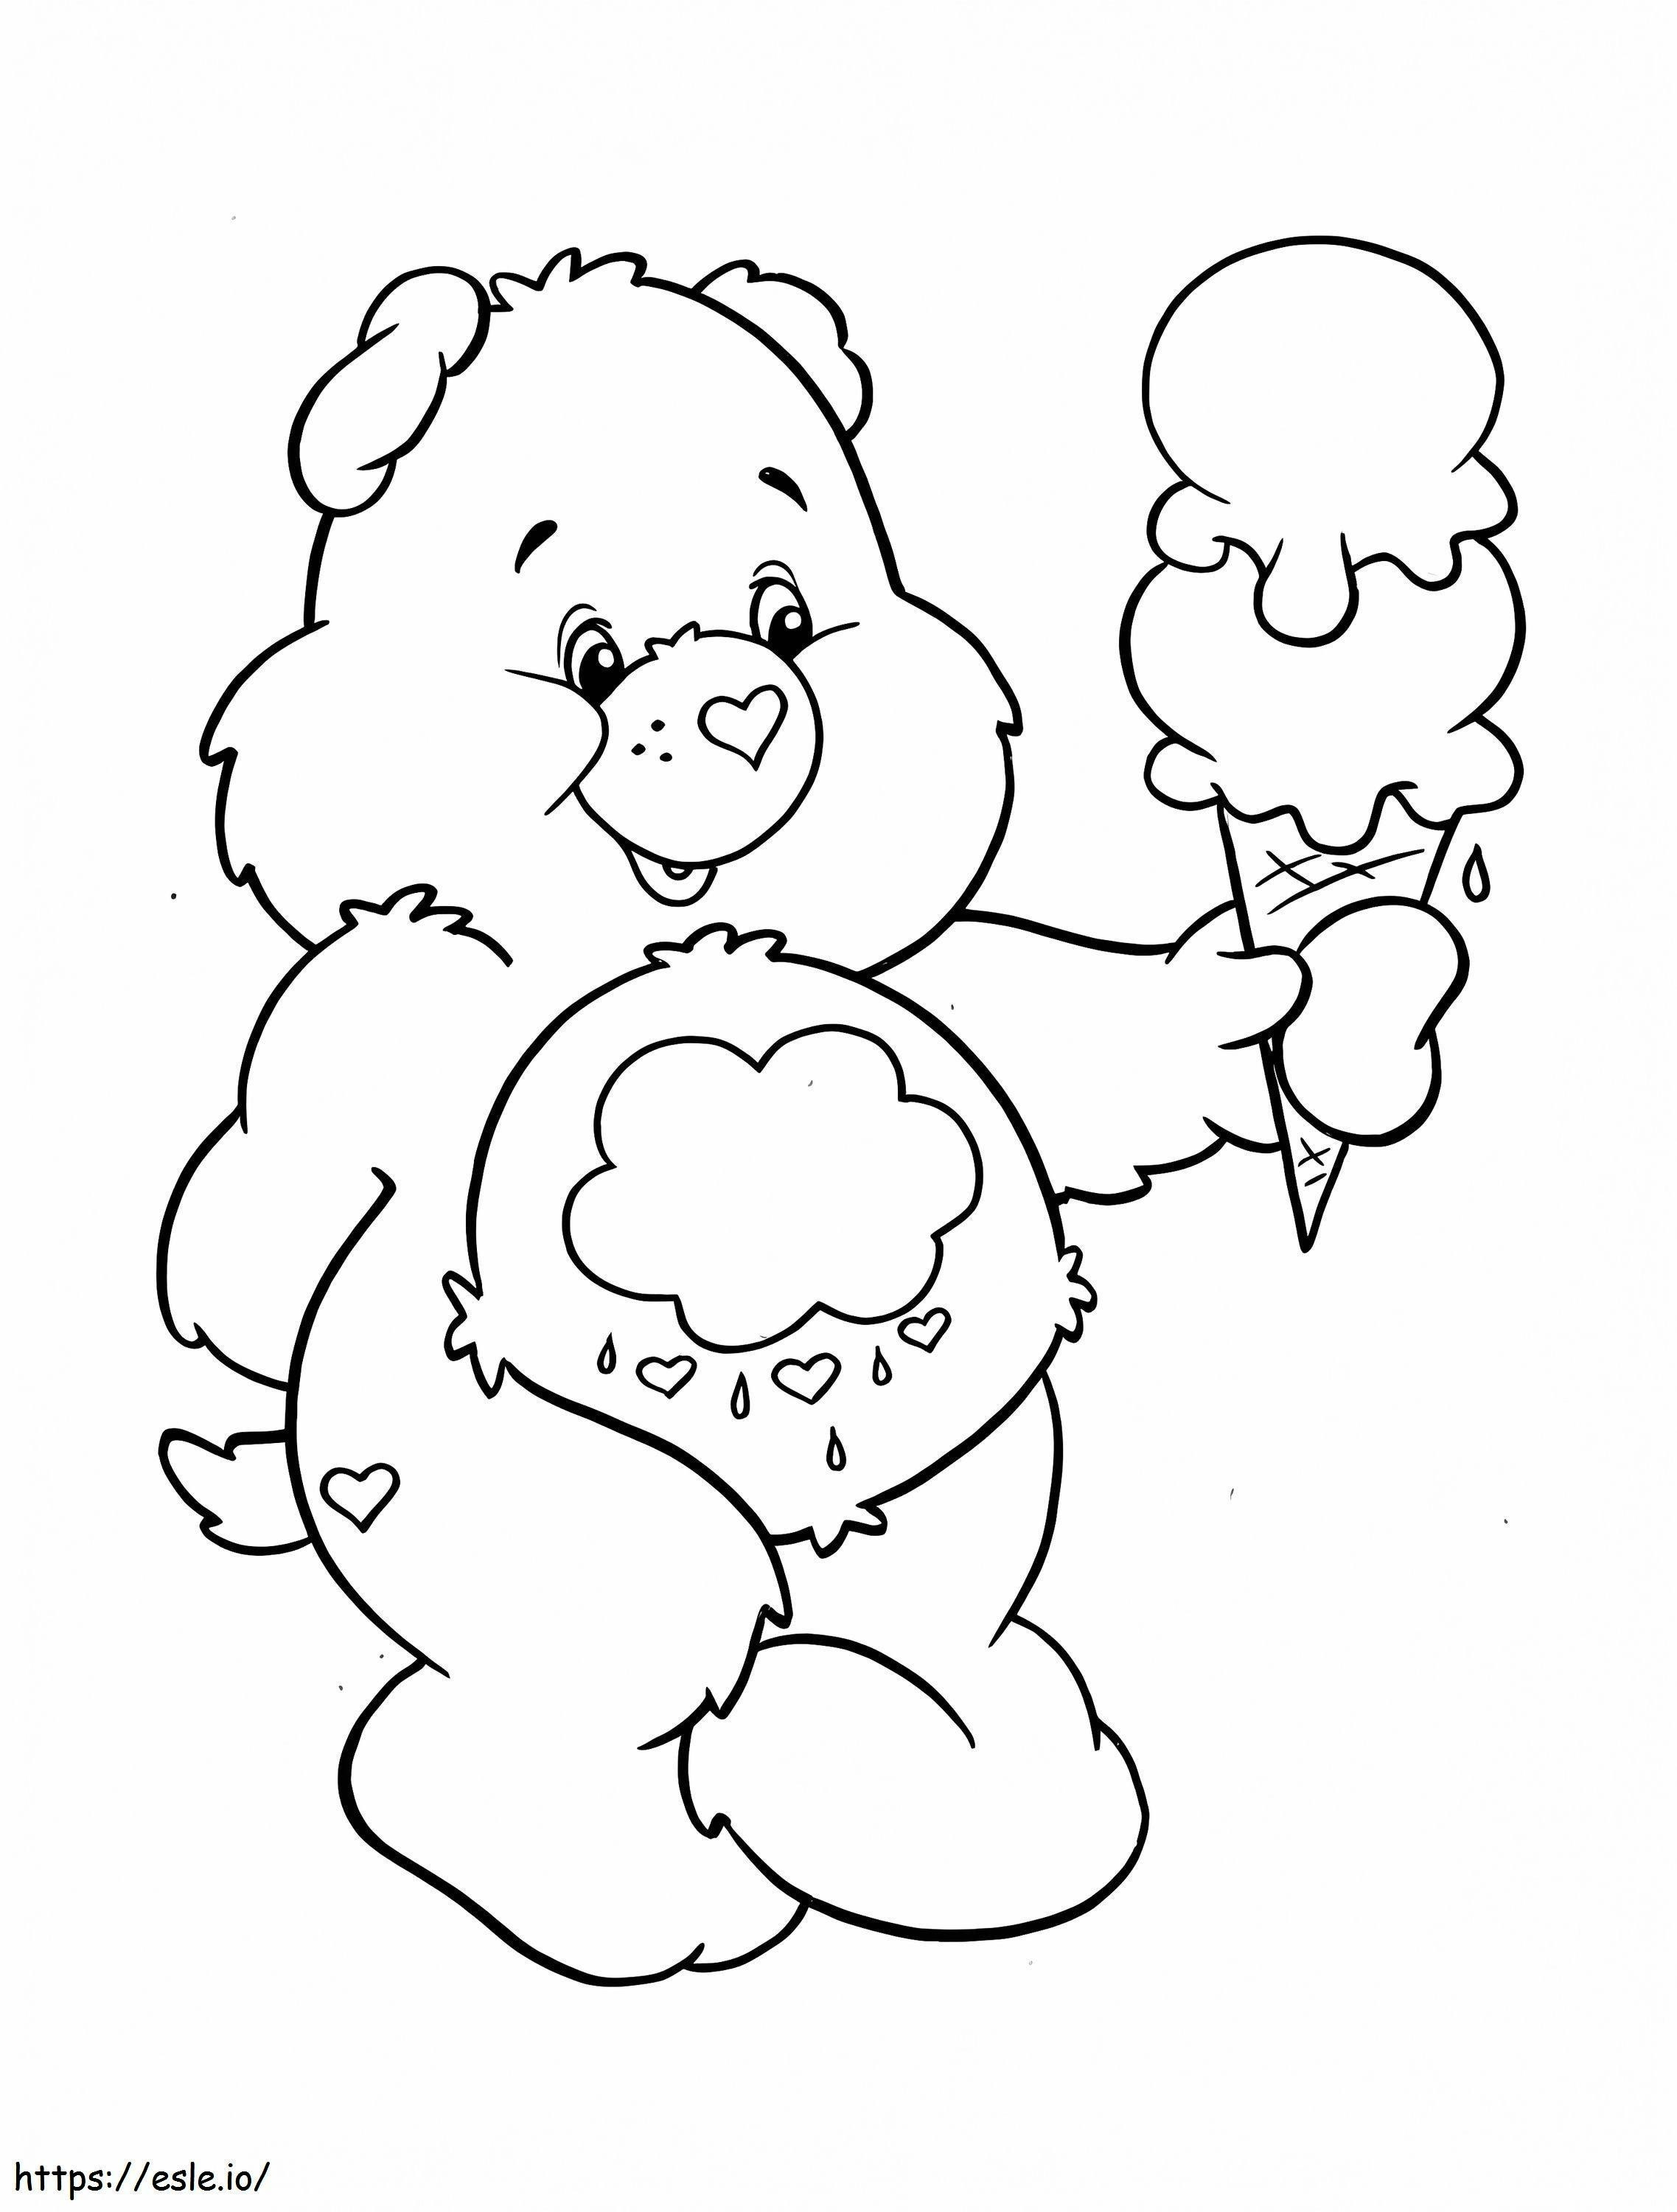 Urso mal-humorado para colorir